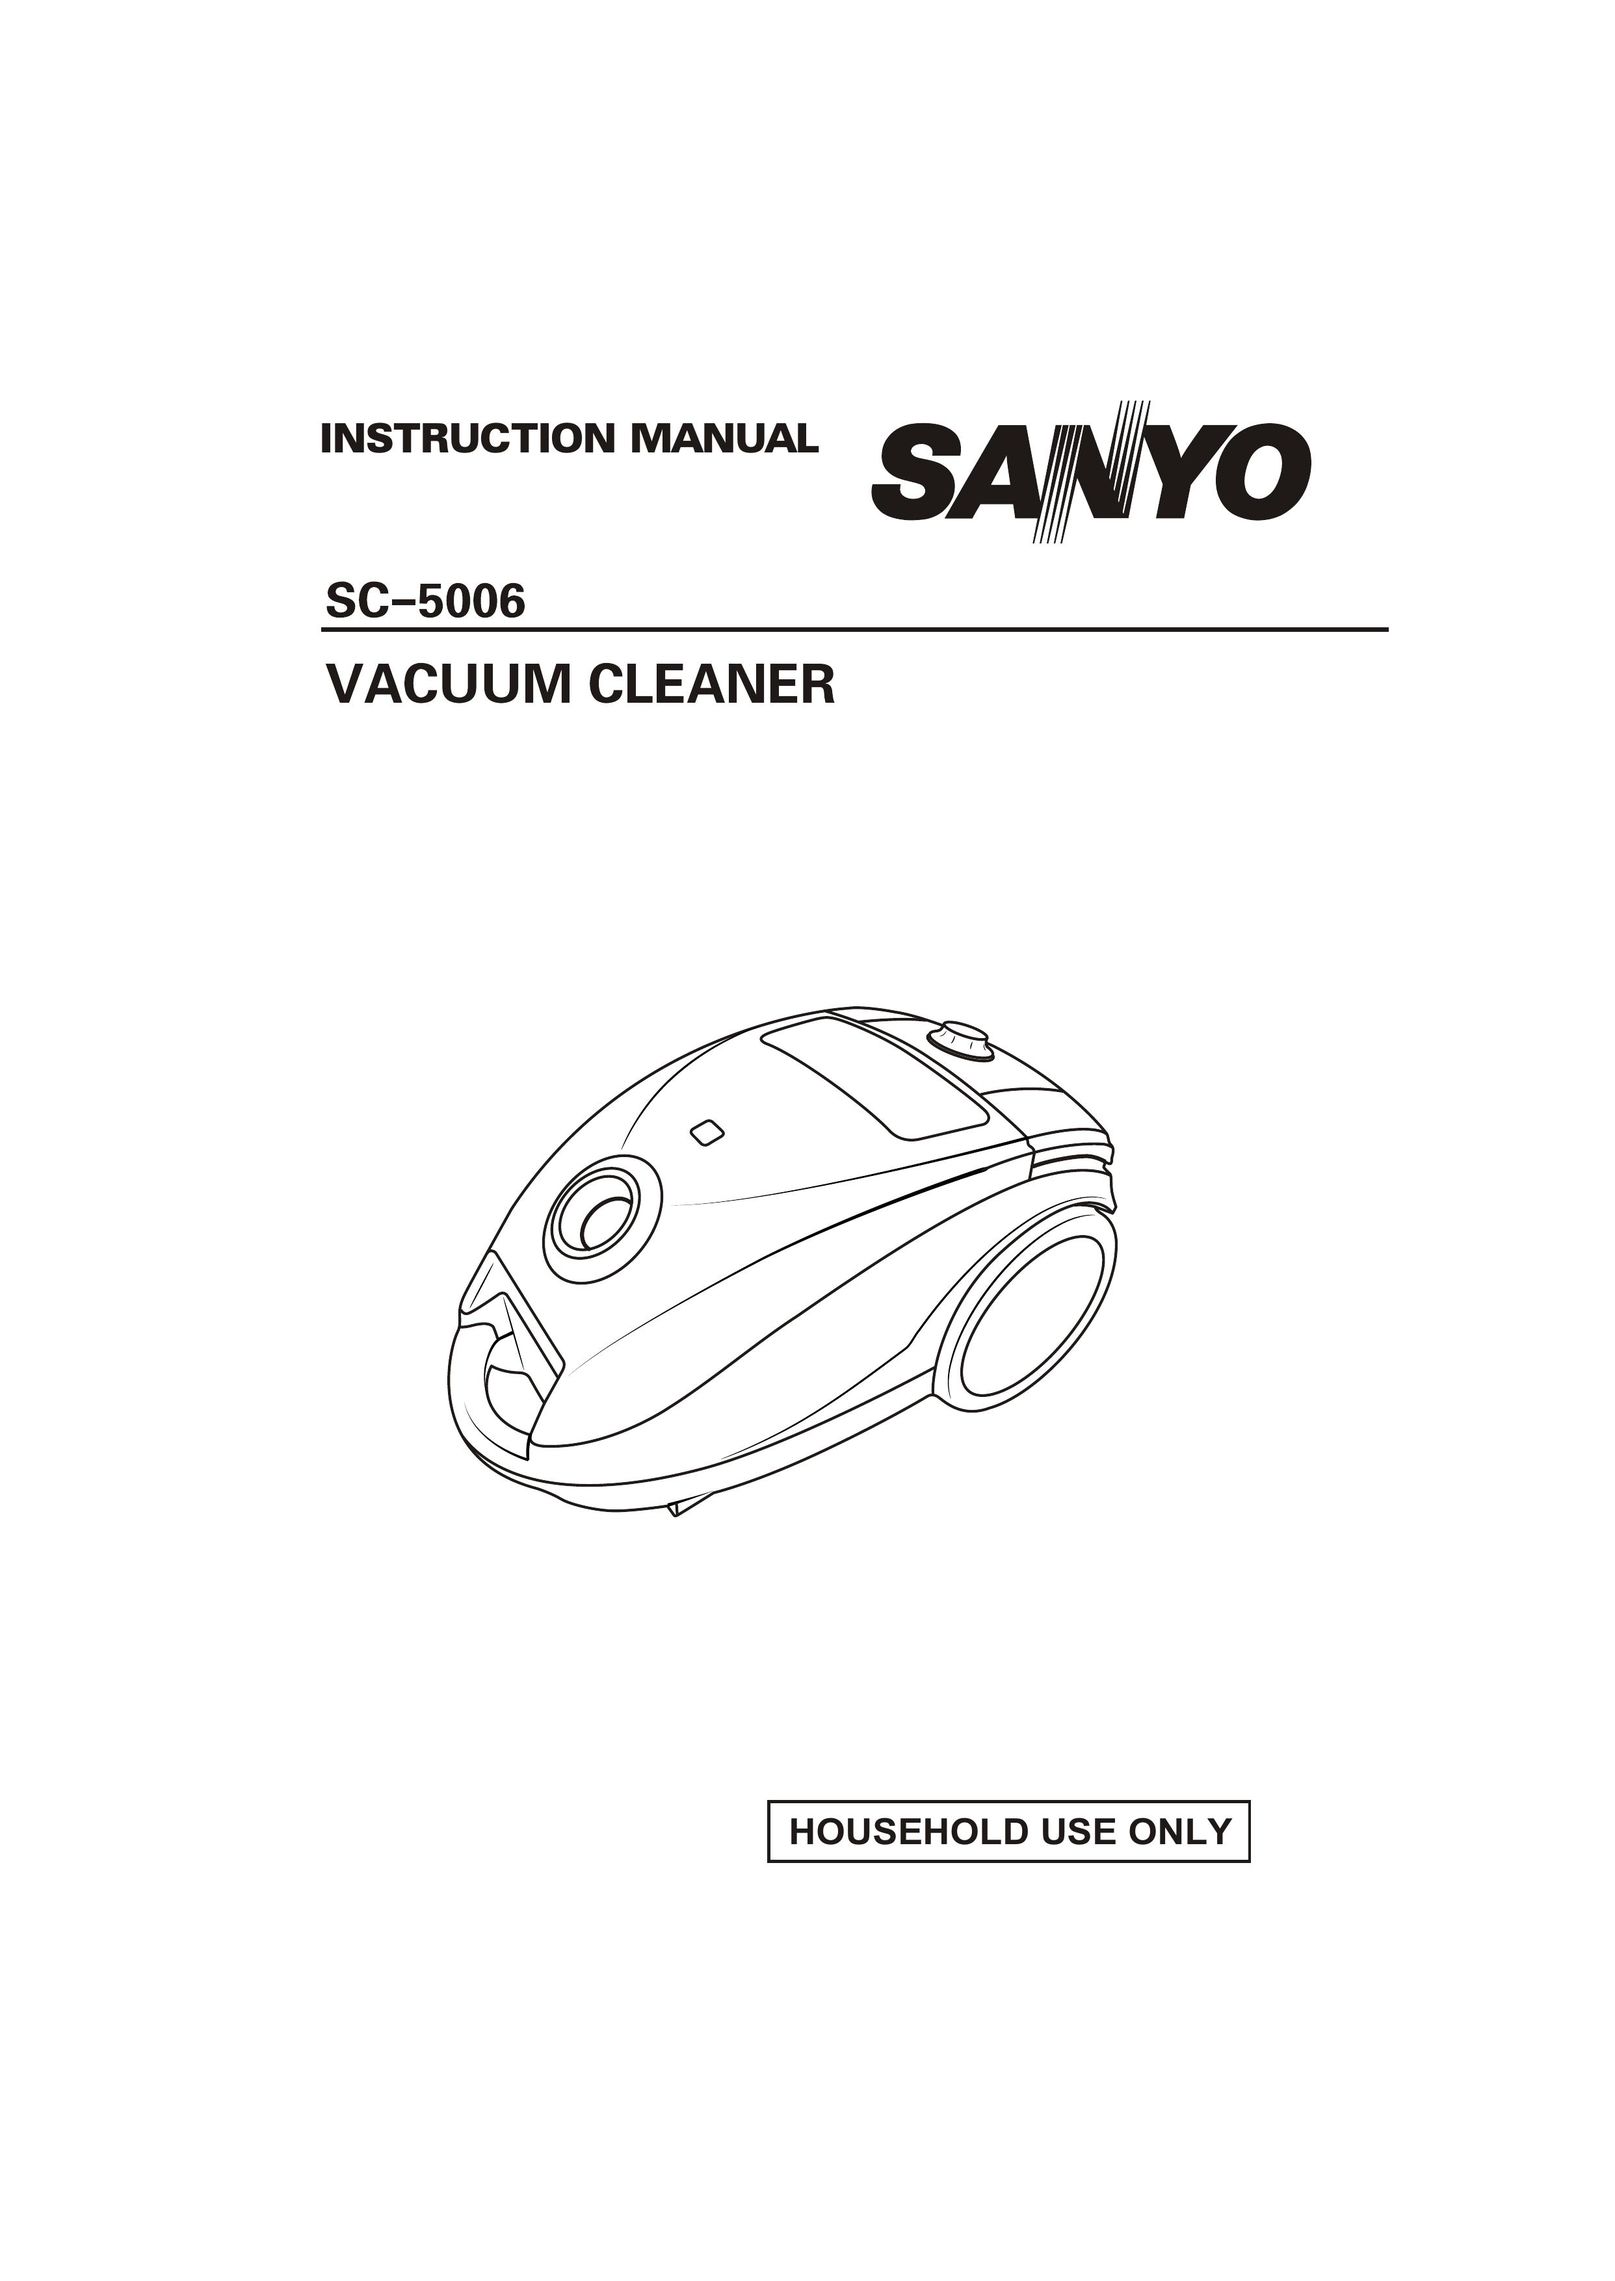 Sanyo SC-5006 Vacuum Cleaner User Manual